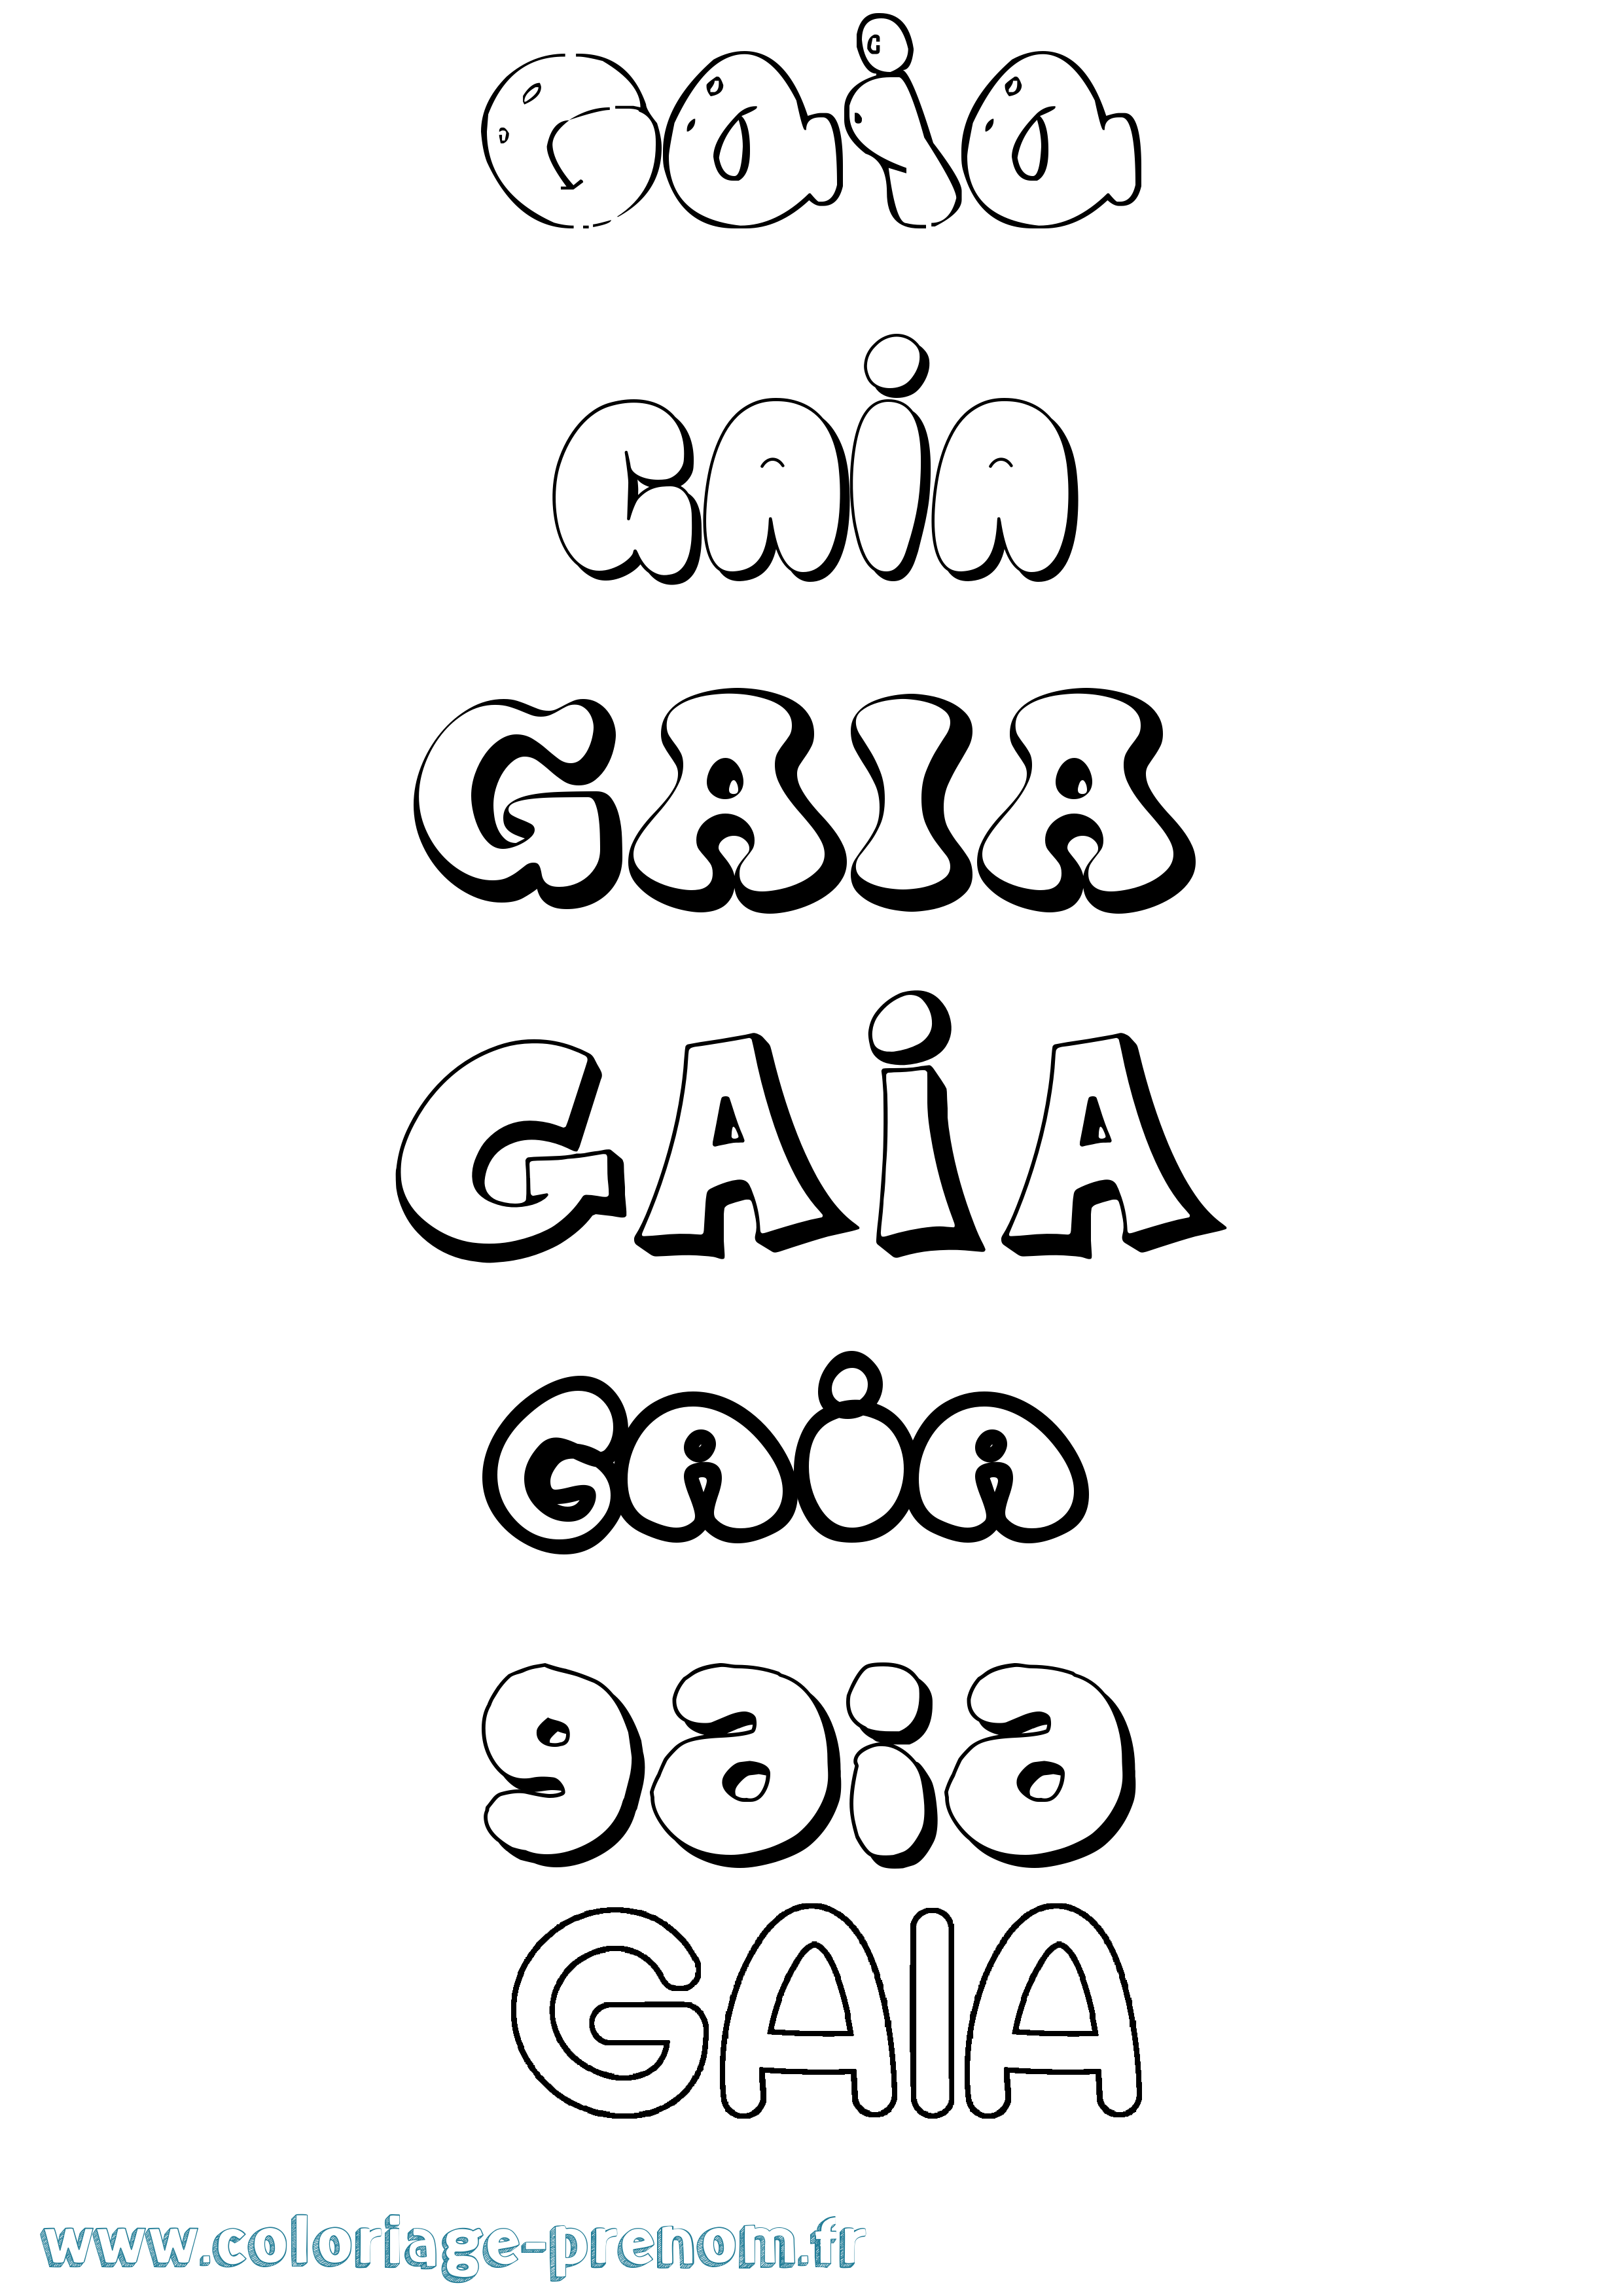 Coloriage prénom Gaia Bubble